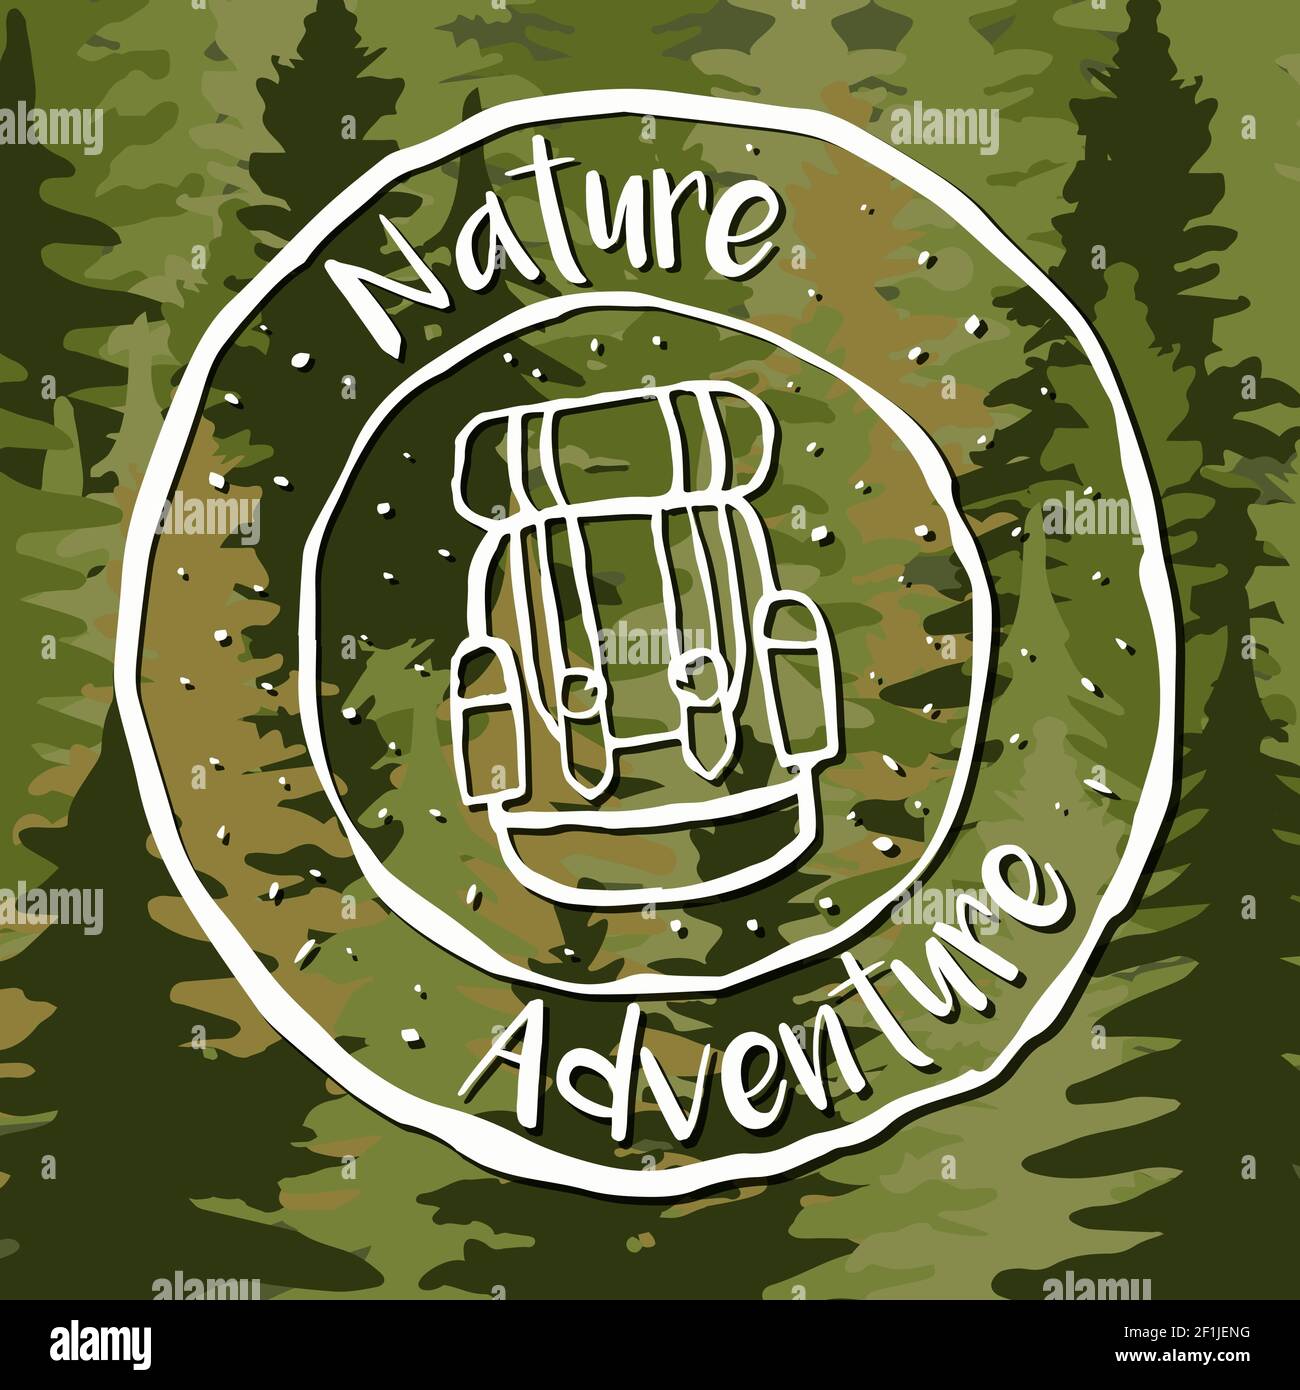 Etiqueta de aventura natural con diseño de mochila dibujado a mano y fondo de bosque de pinos. Eco turismo vacaciones concepto. Ilustración del Vector